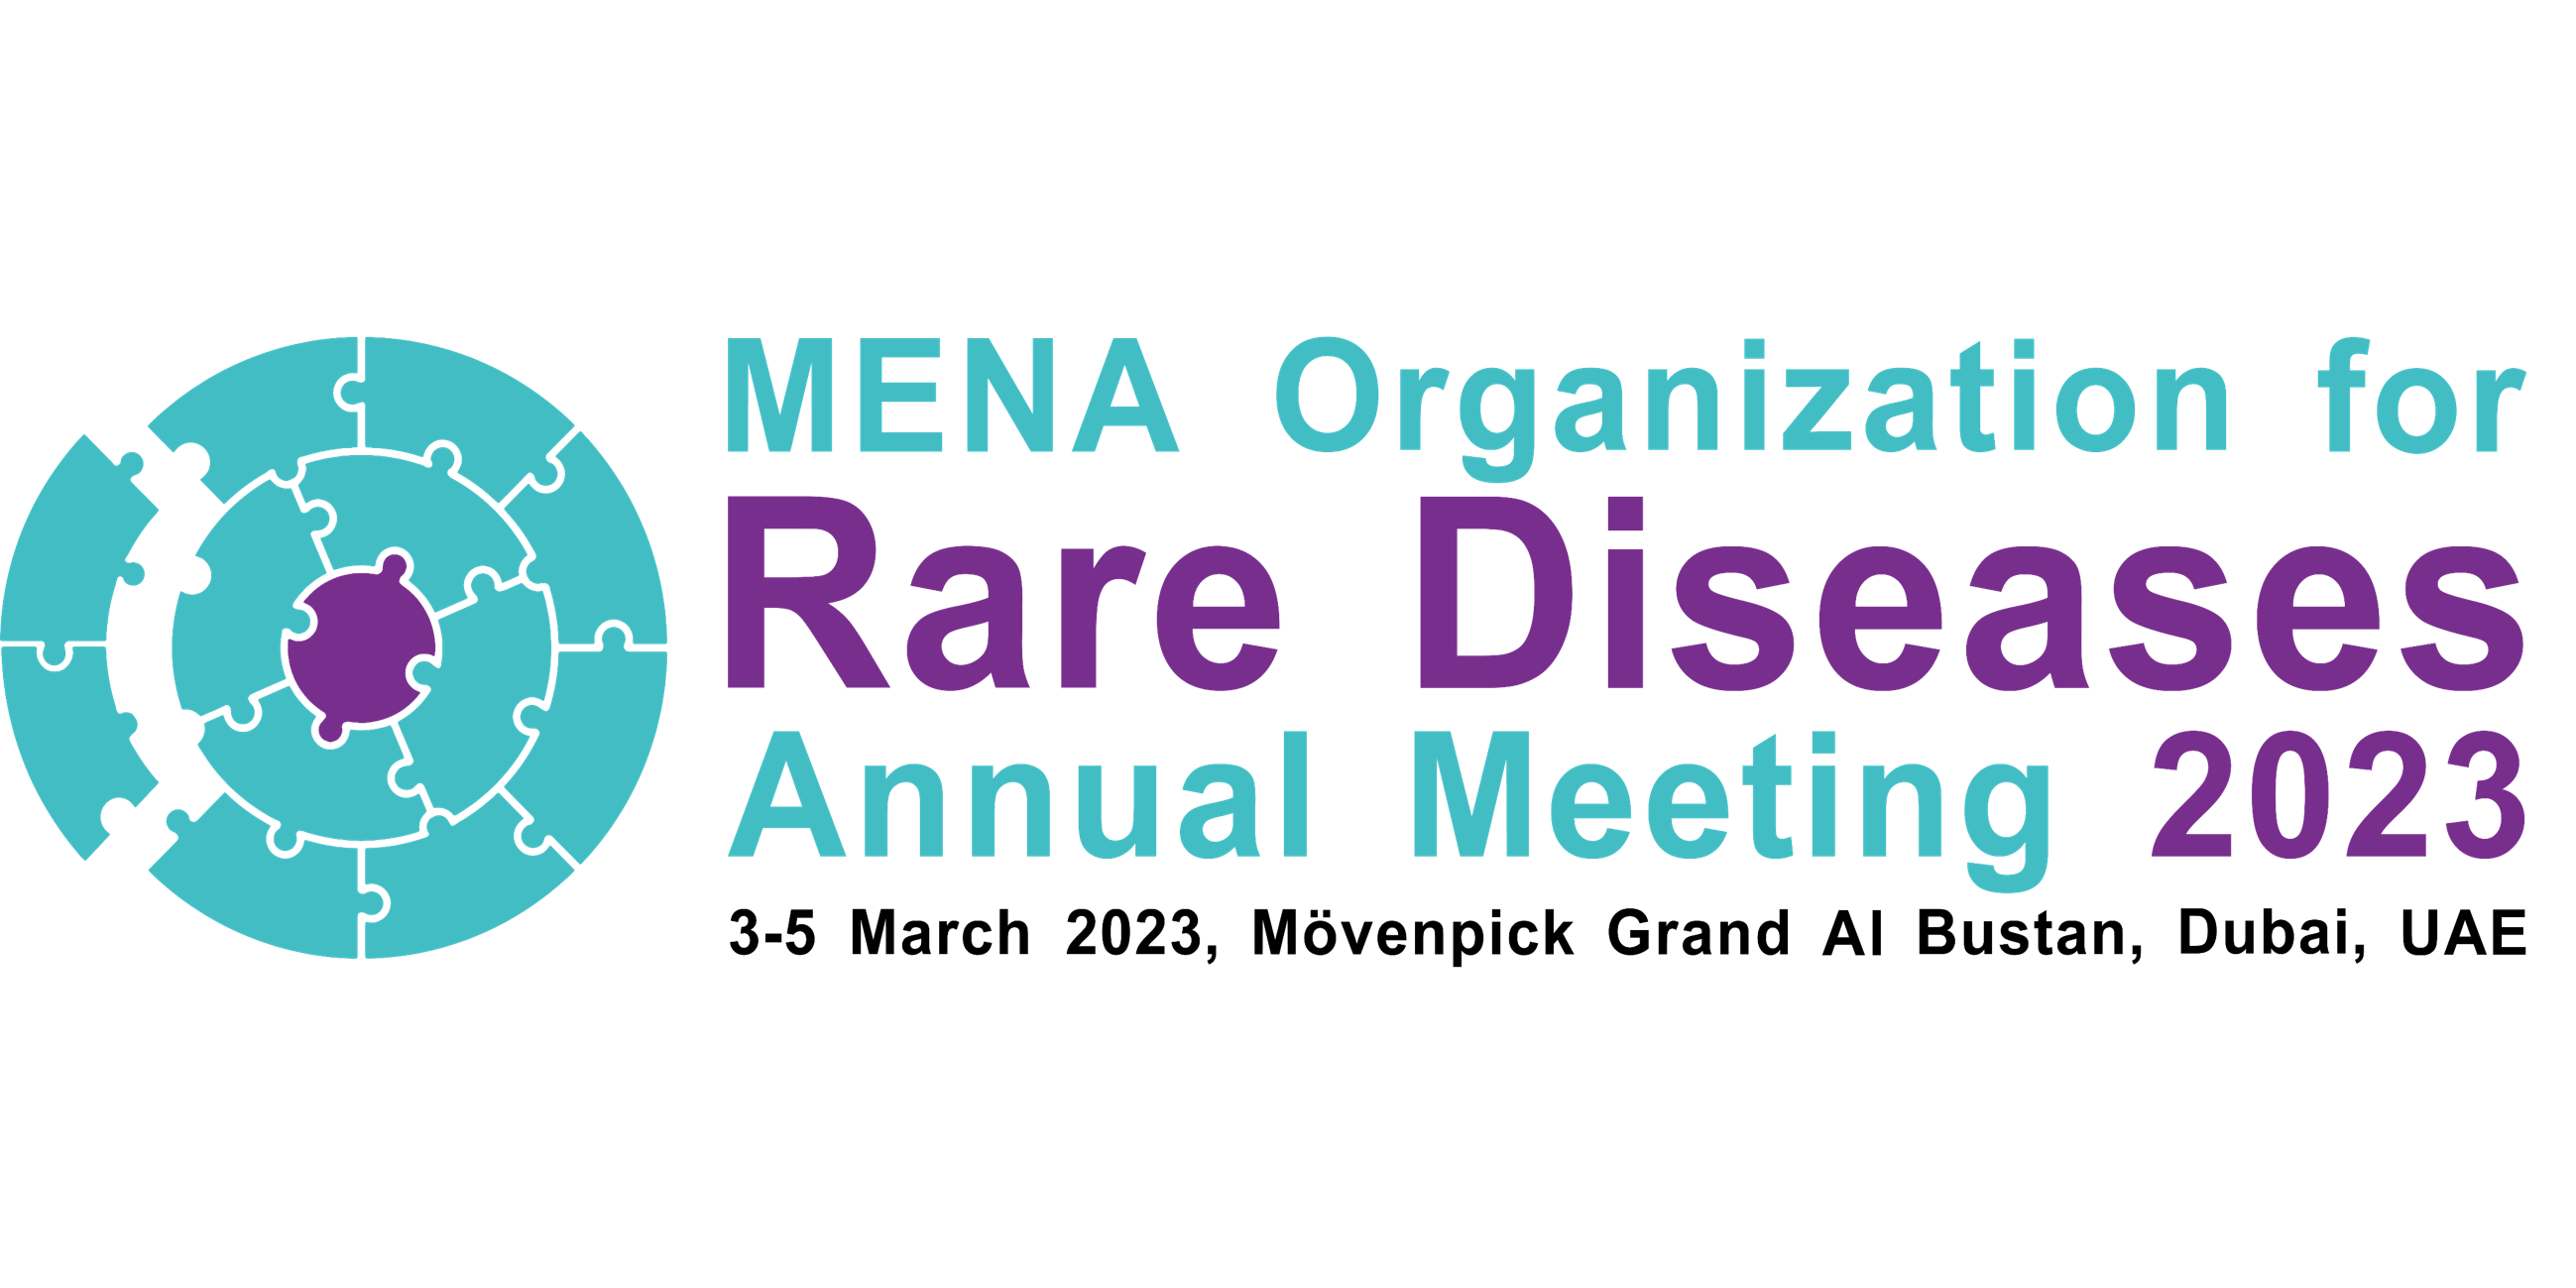 MENA Organization for Rare Diseases Annual Meeting